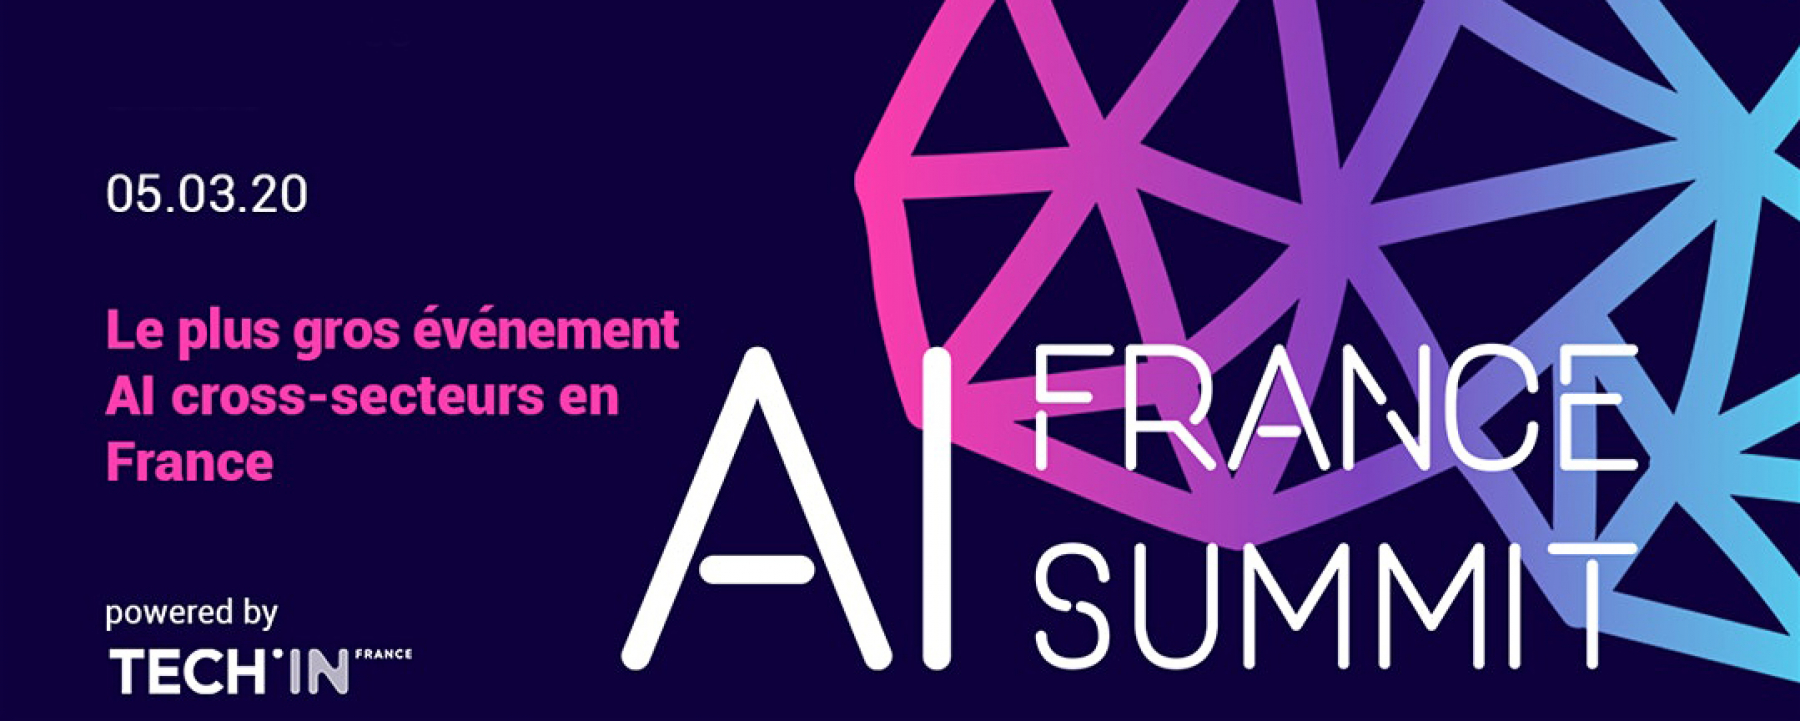 Conférence AI France Summit 2020, un événement organisé par Tech'In France